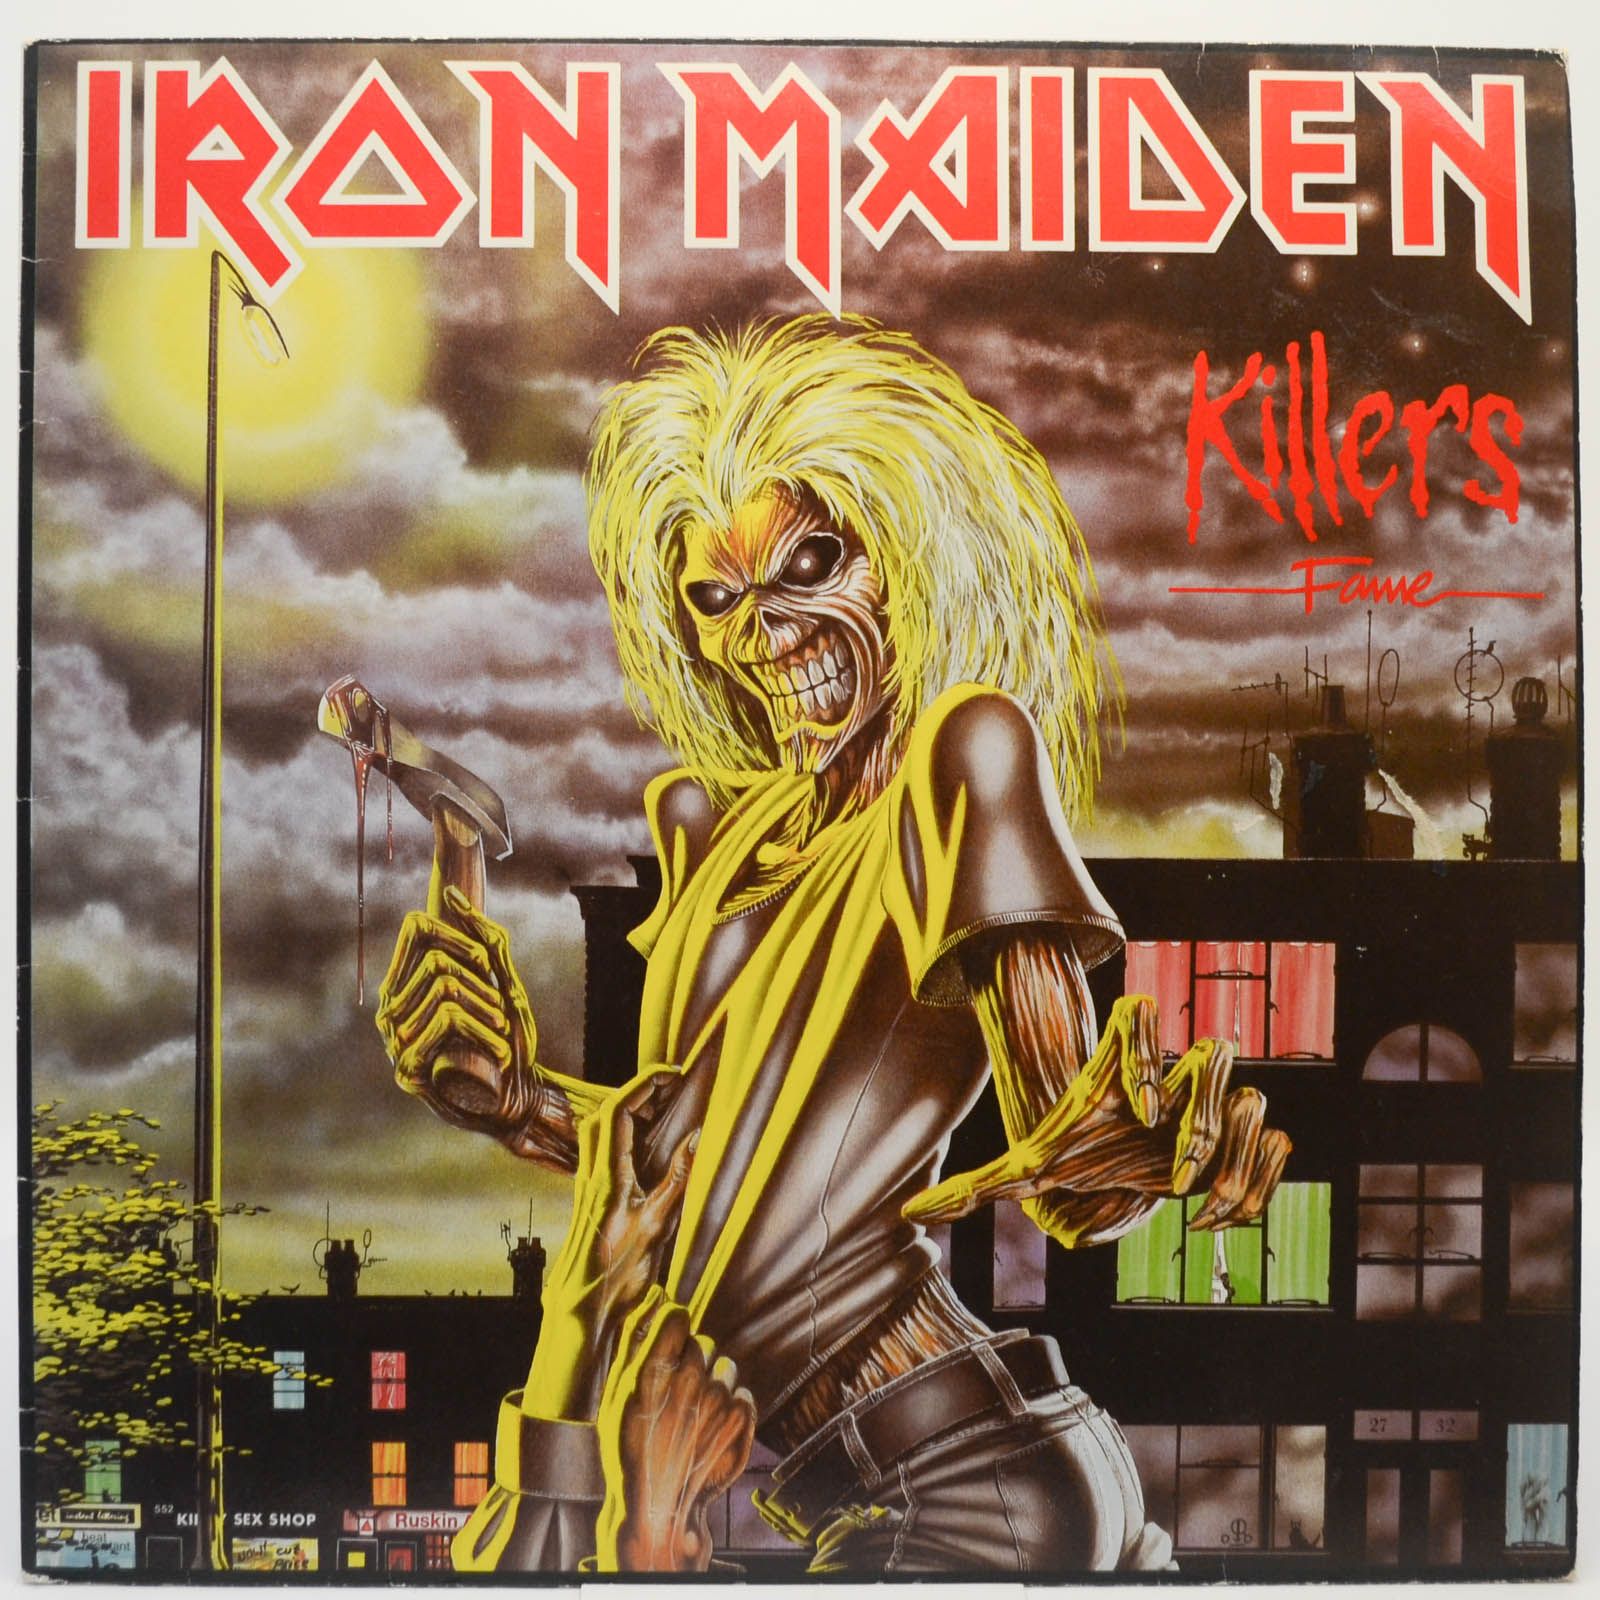 Iron Maiden — Killers, 1981